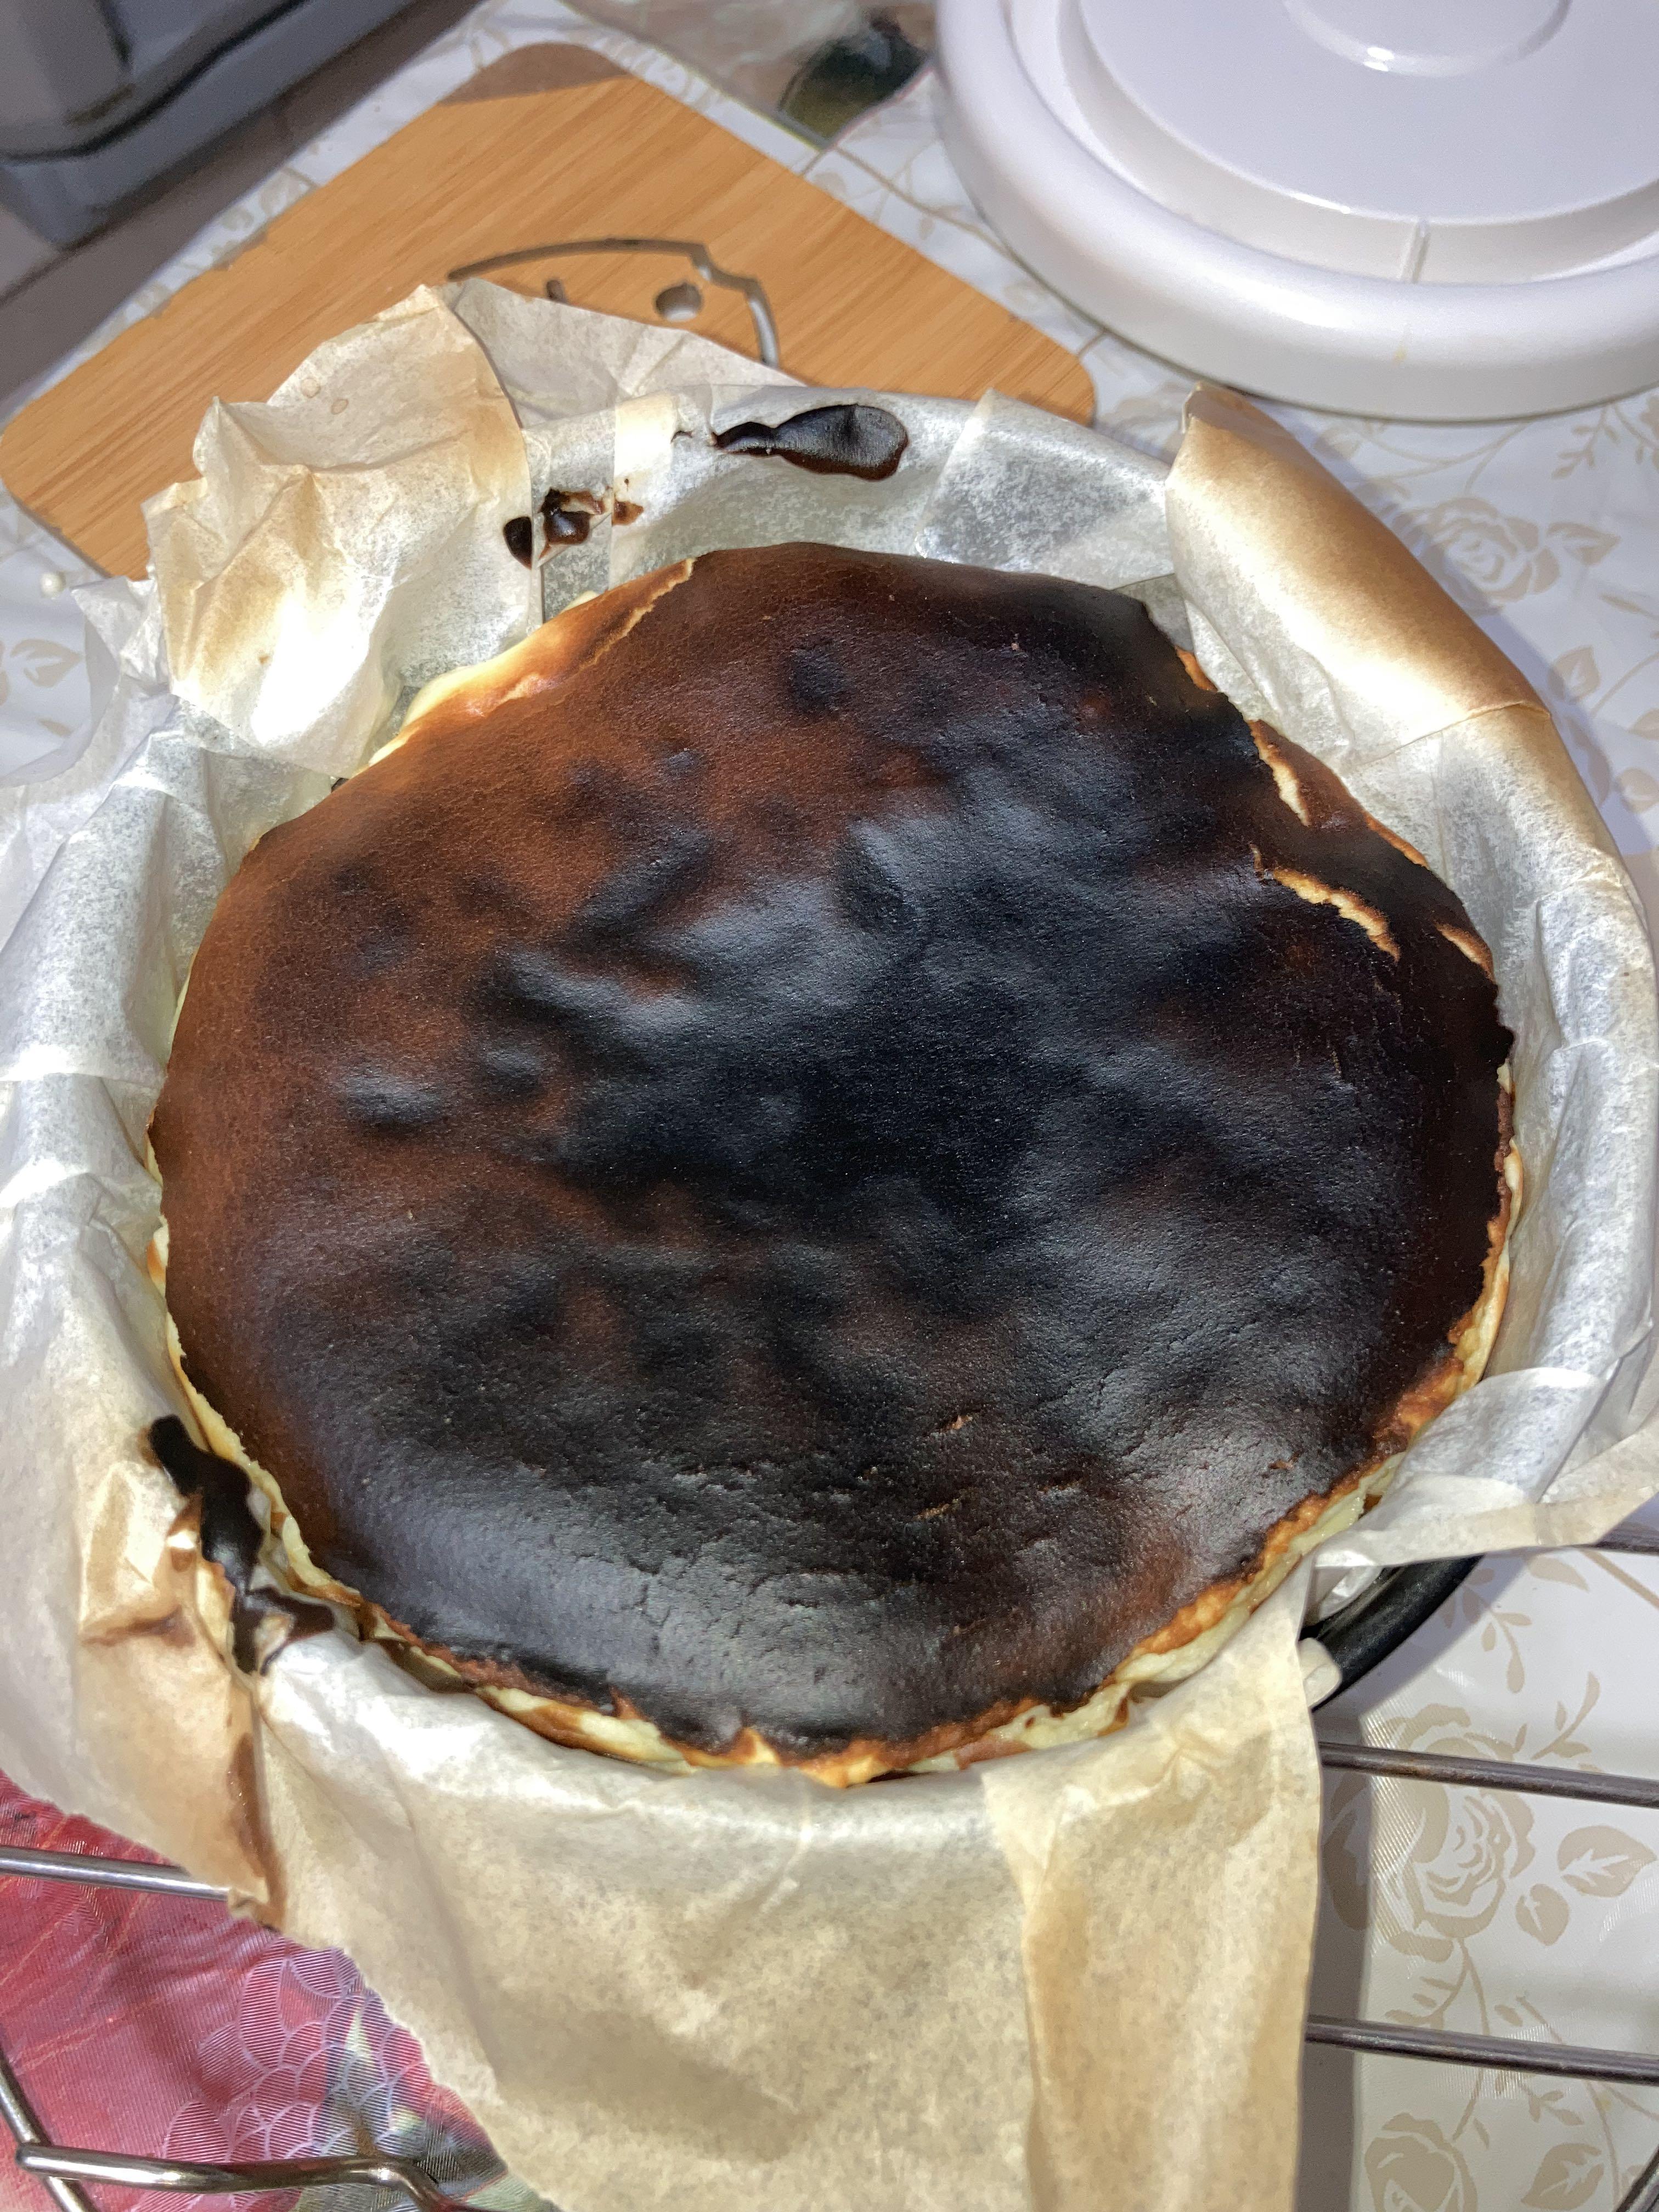 This burnt cake I made looks like an erupting volcano. : r/mildlyinteresting